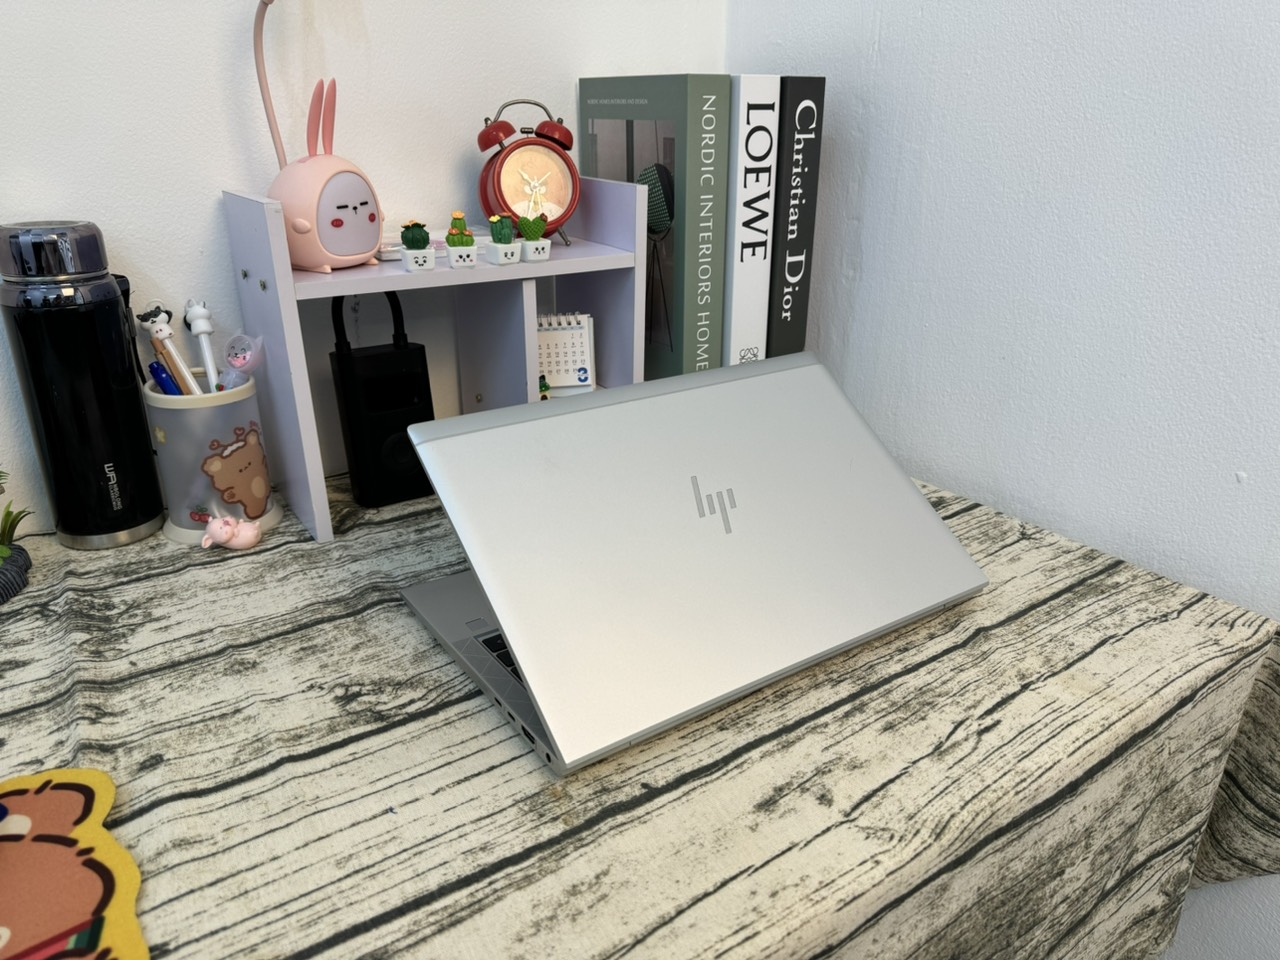 HP Elitebook 840 G7